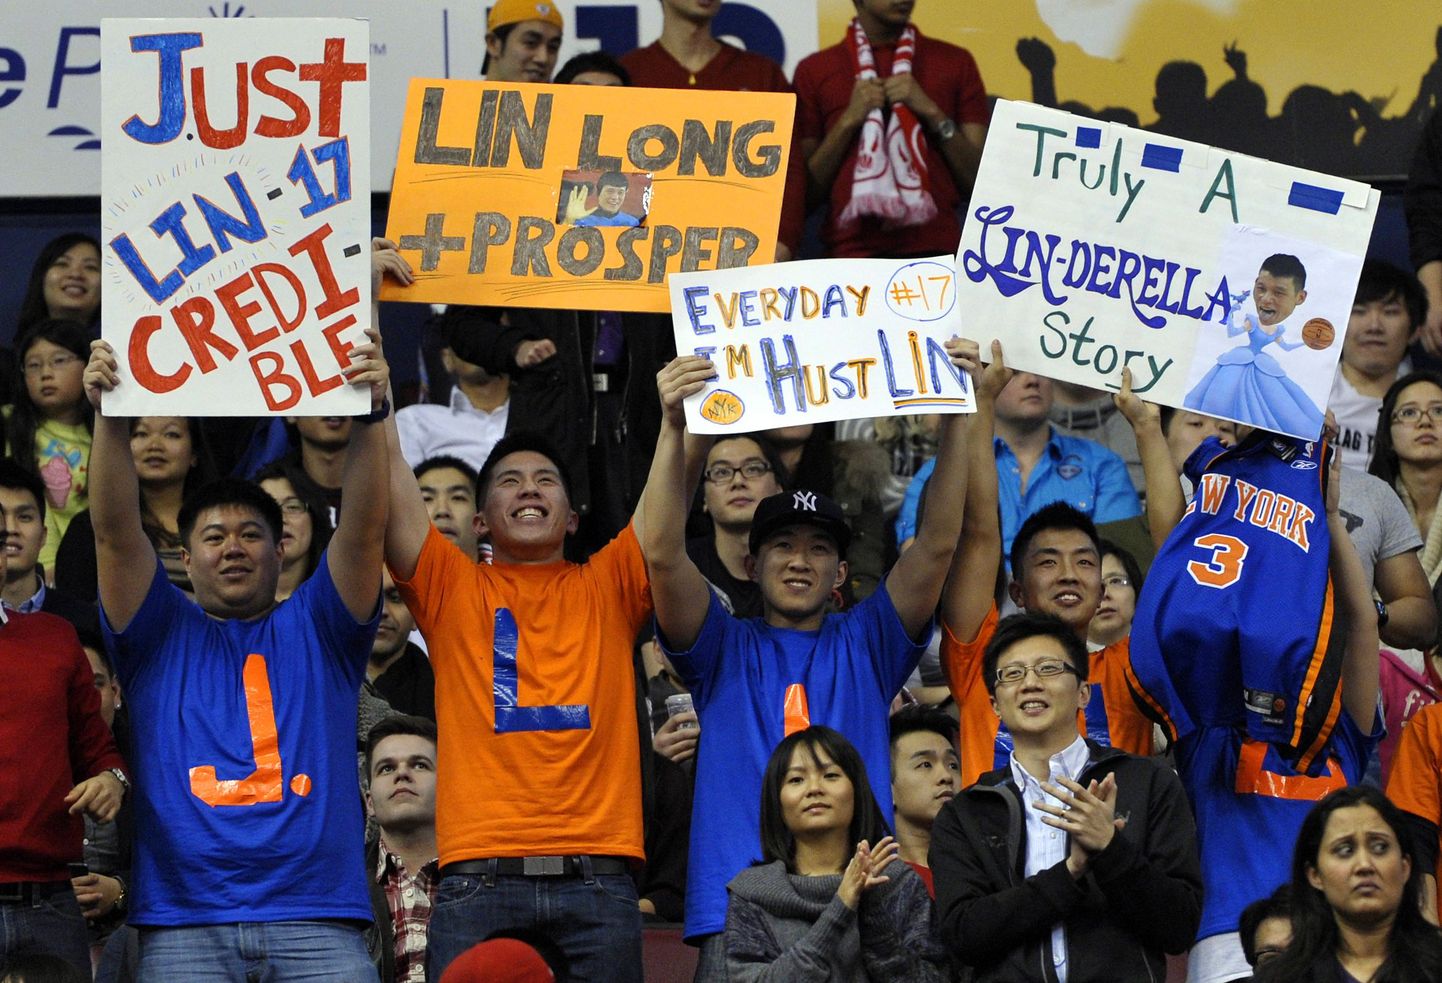 NBA-d on vallutamas Jeremy Lini hullus ehk Linsanity.